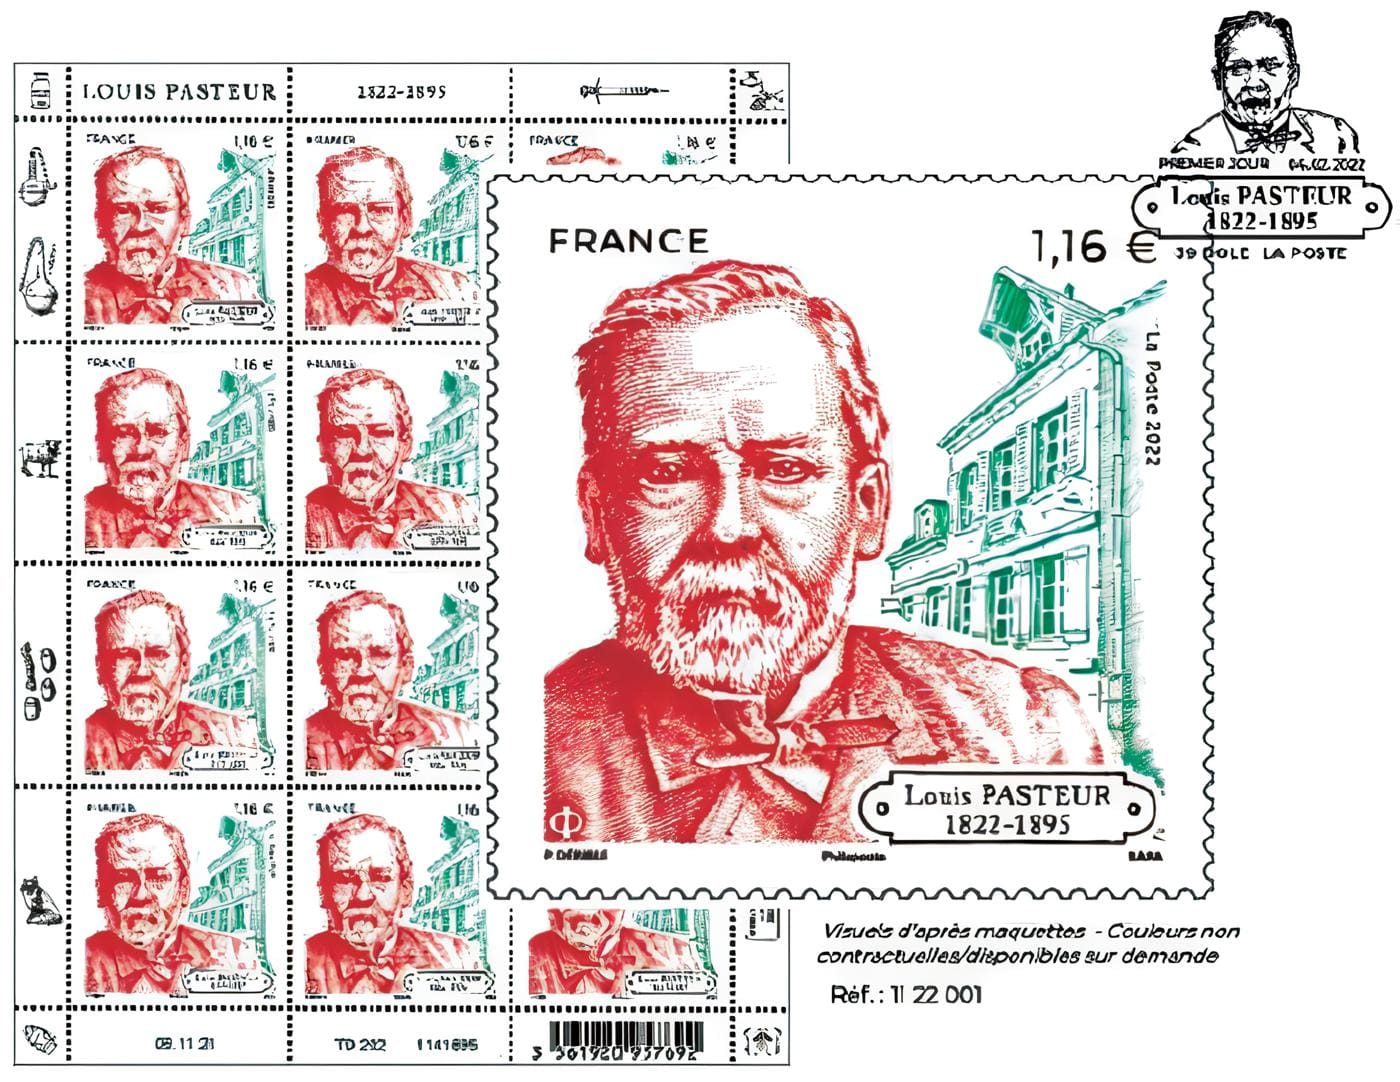 Estampilla conmemorativa del natalicio de Louis Pasteur